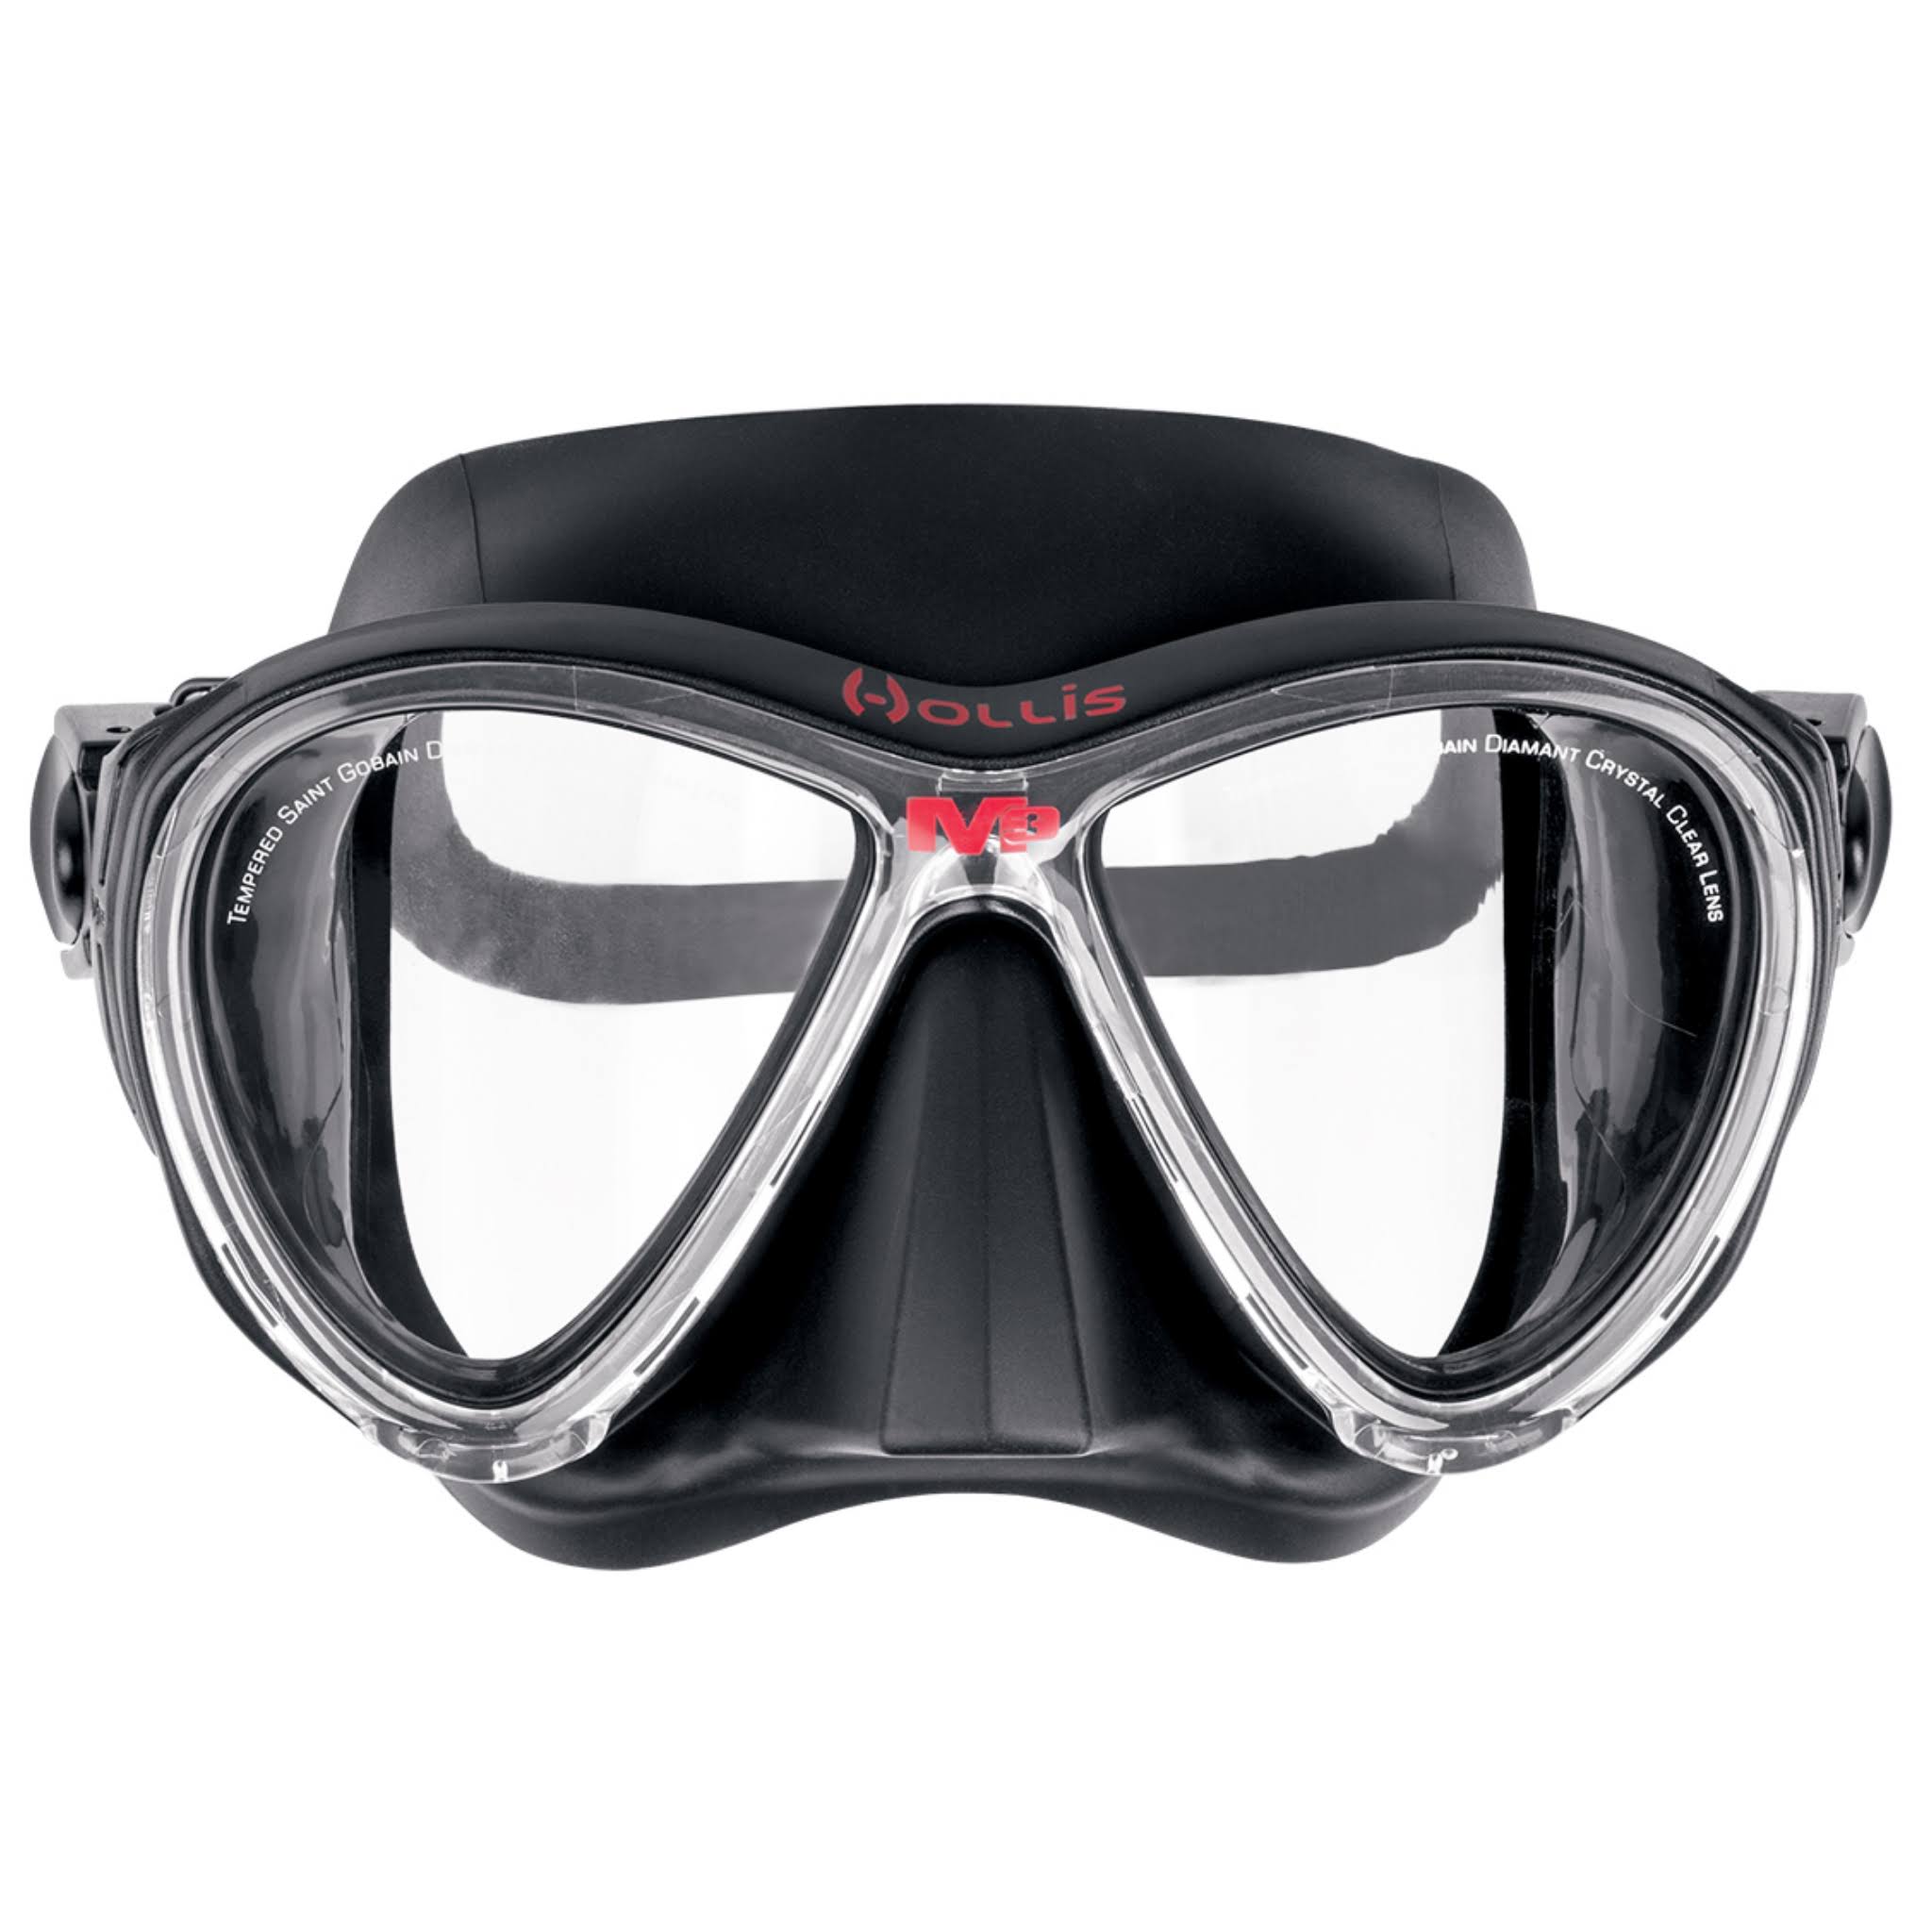 Hollis M 3 Scuba Diving Dive Free Diving Mask - Black